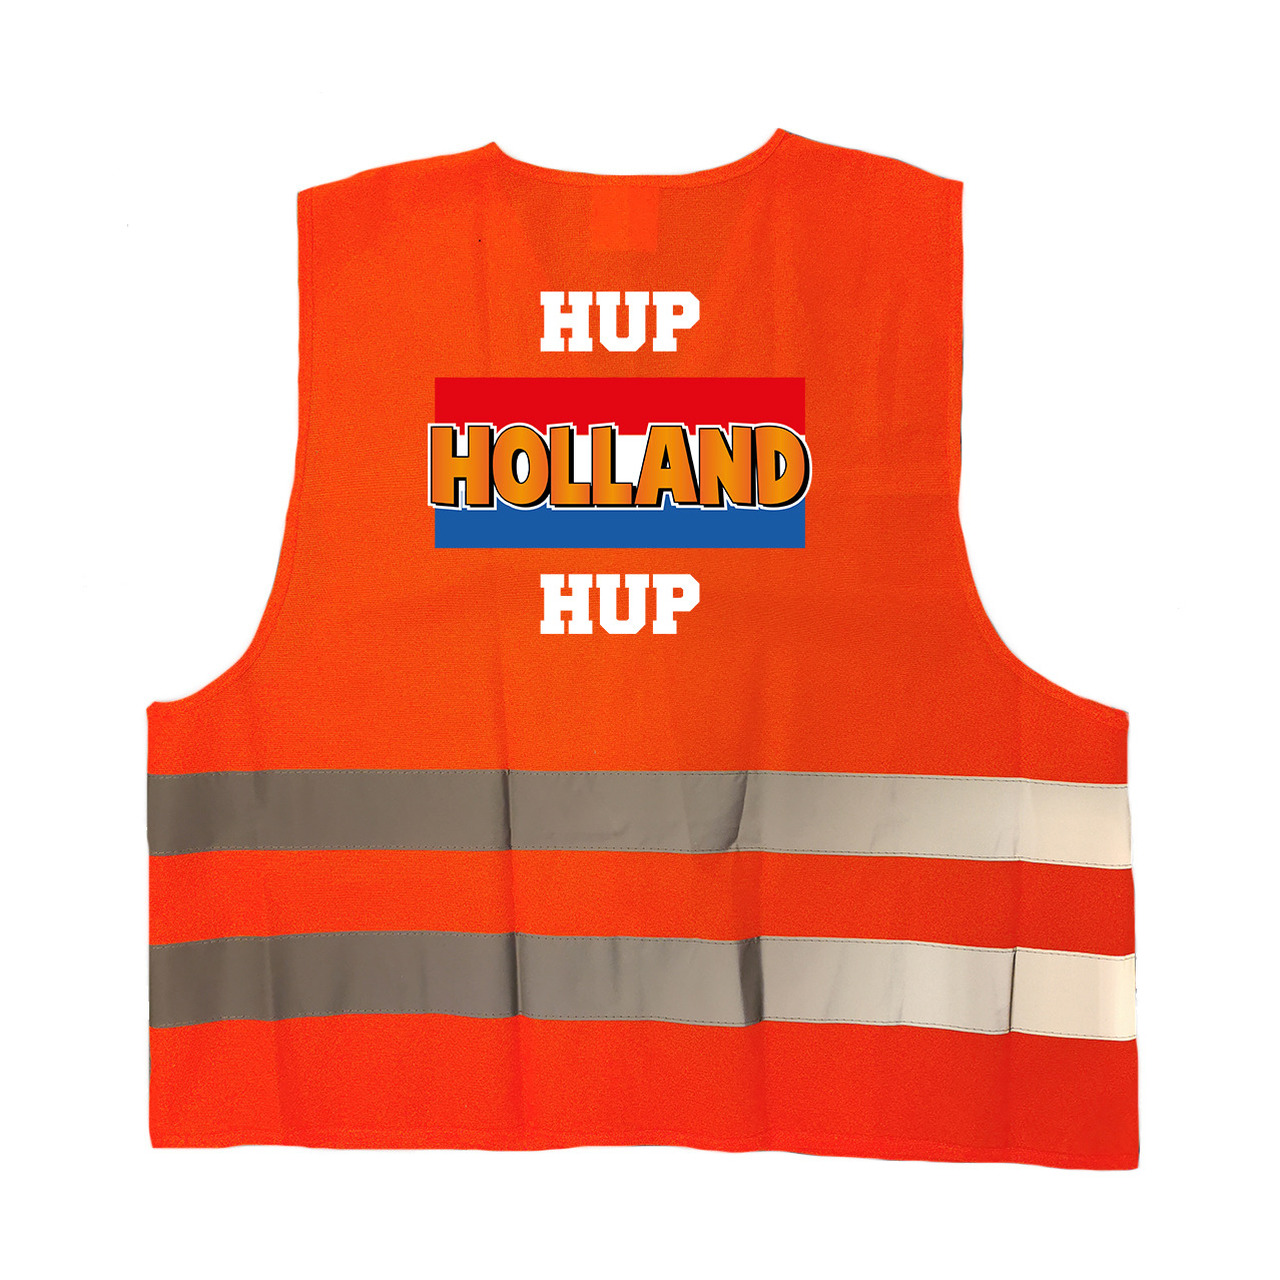 Hup Holland hup oranje veiligheidshesje EK - WK supporter outfit voor volwassenen